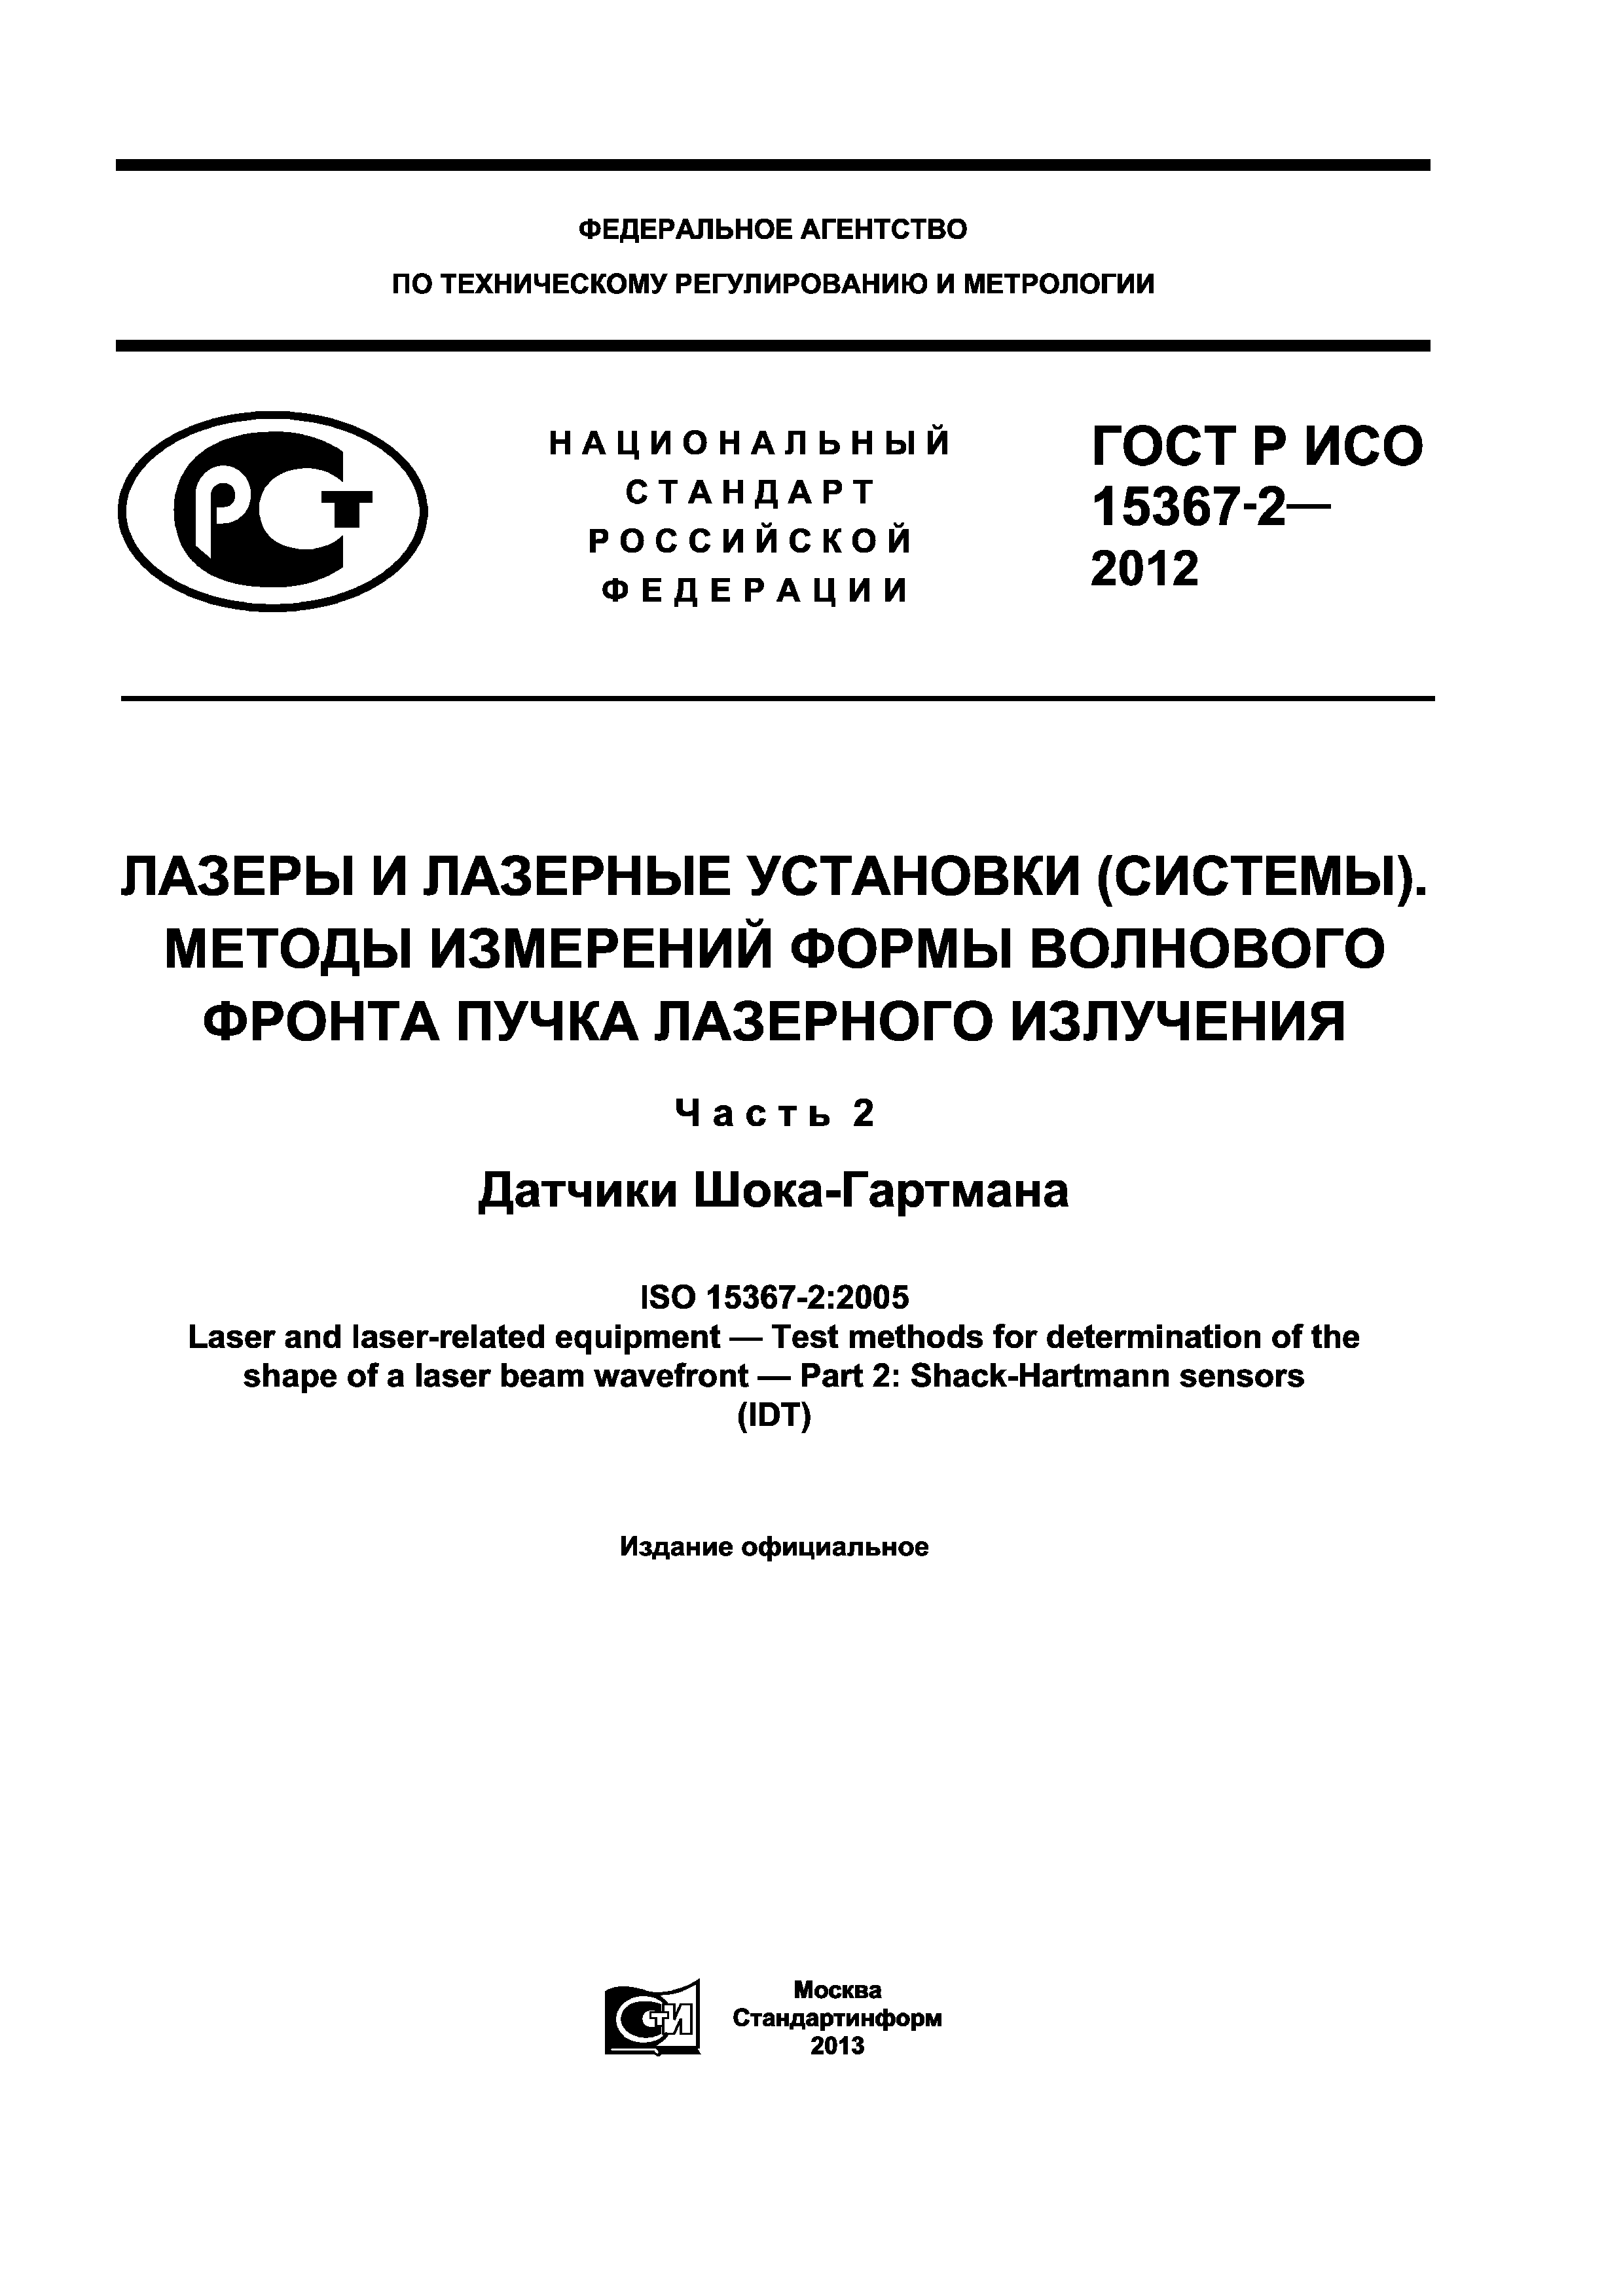 ГОСТ Р ИСО 15367-2-2012